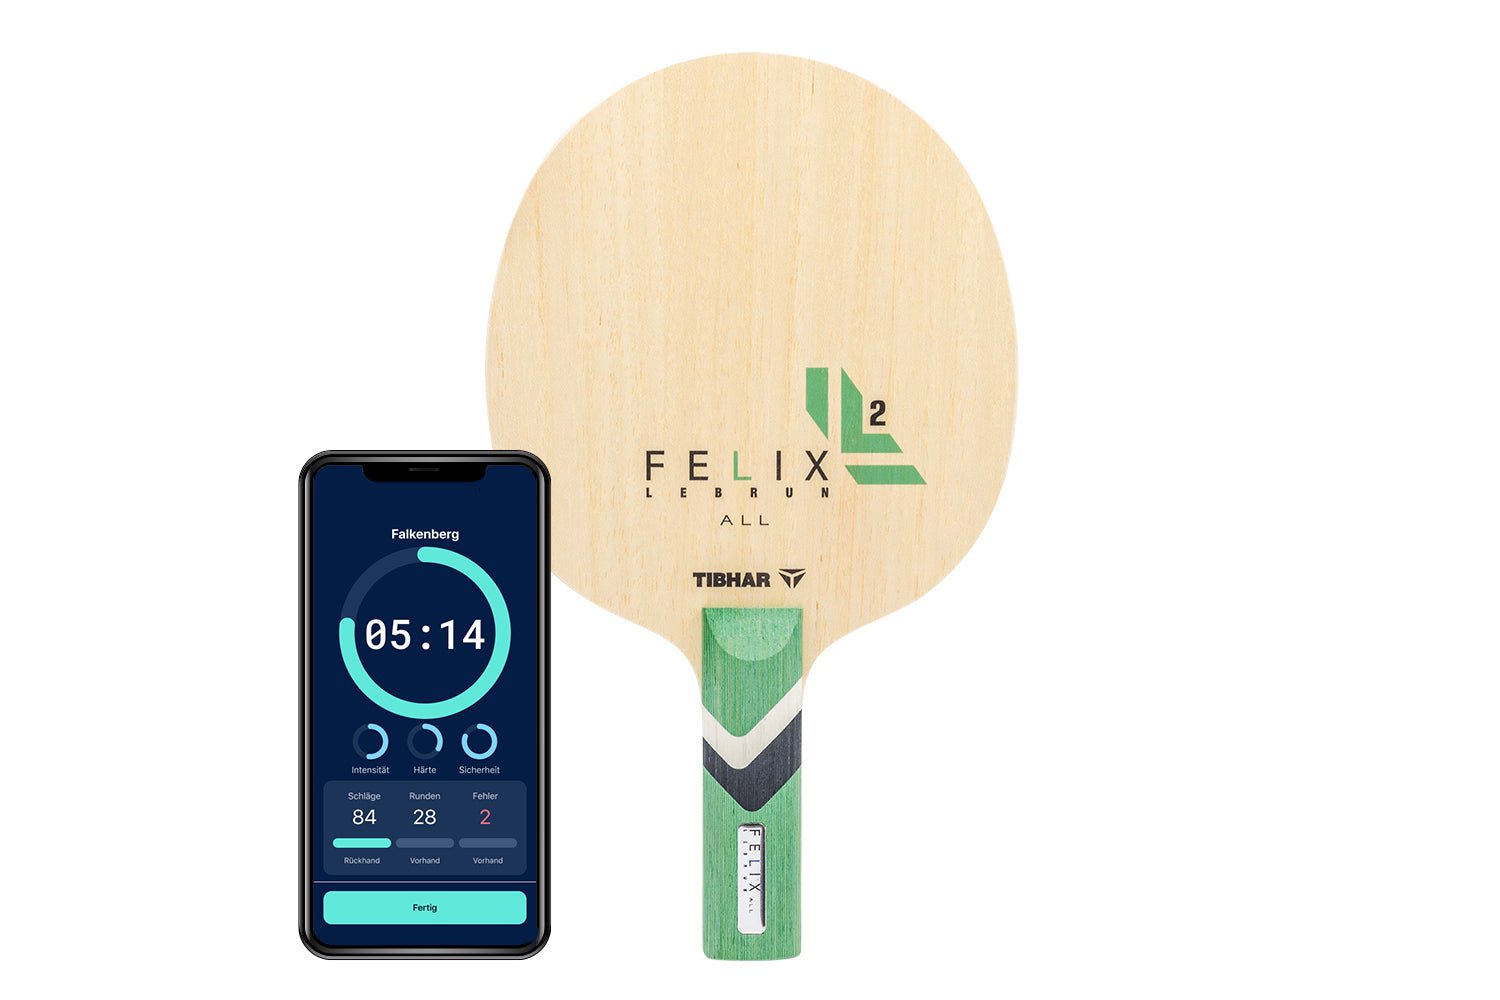 Tibhar Félix Lebrun All Tischtennisschläger mit geradem Griff und Smartphone zeigt Daten des Schlägers vor weißem Hintergrund